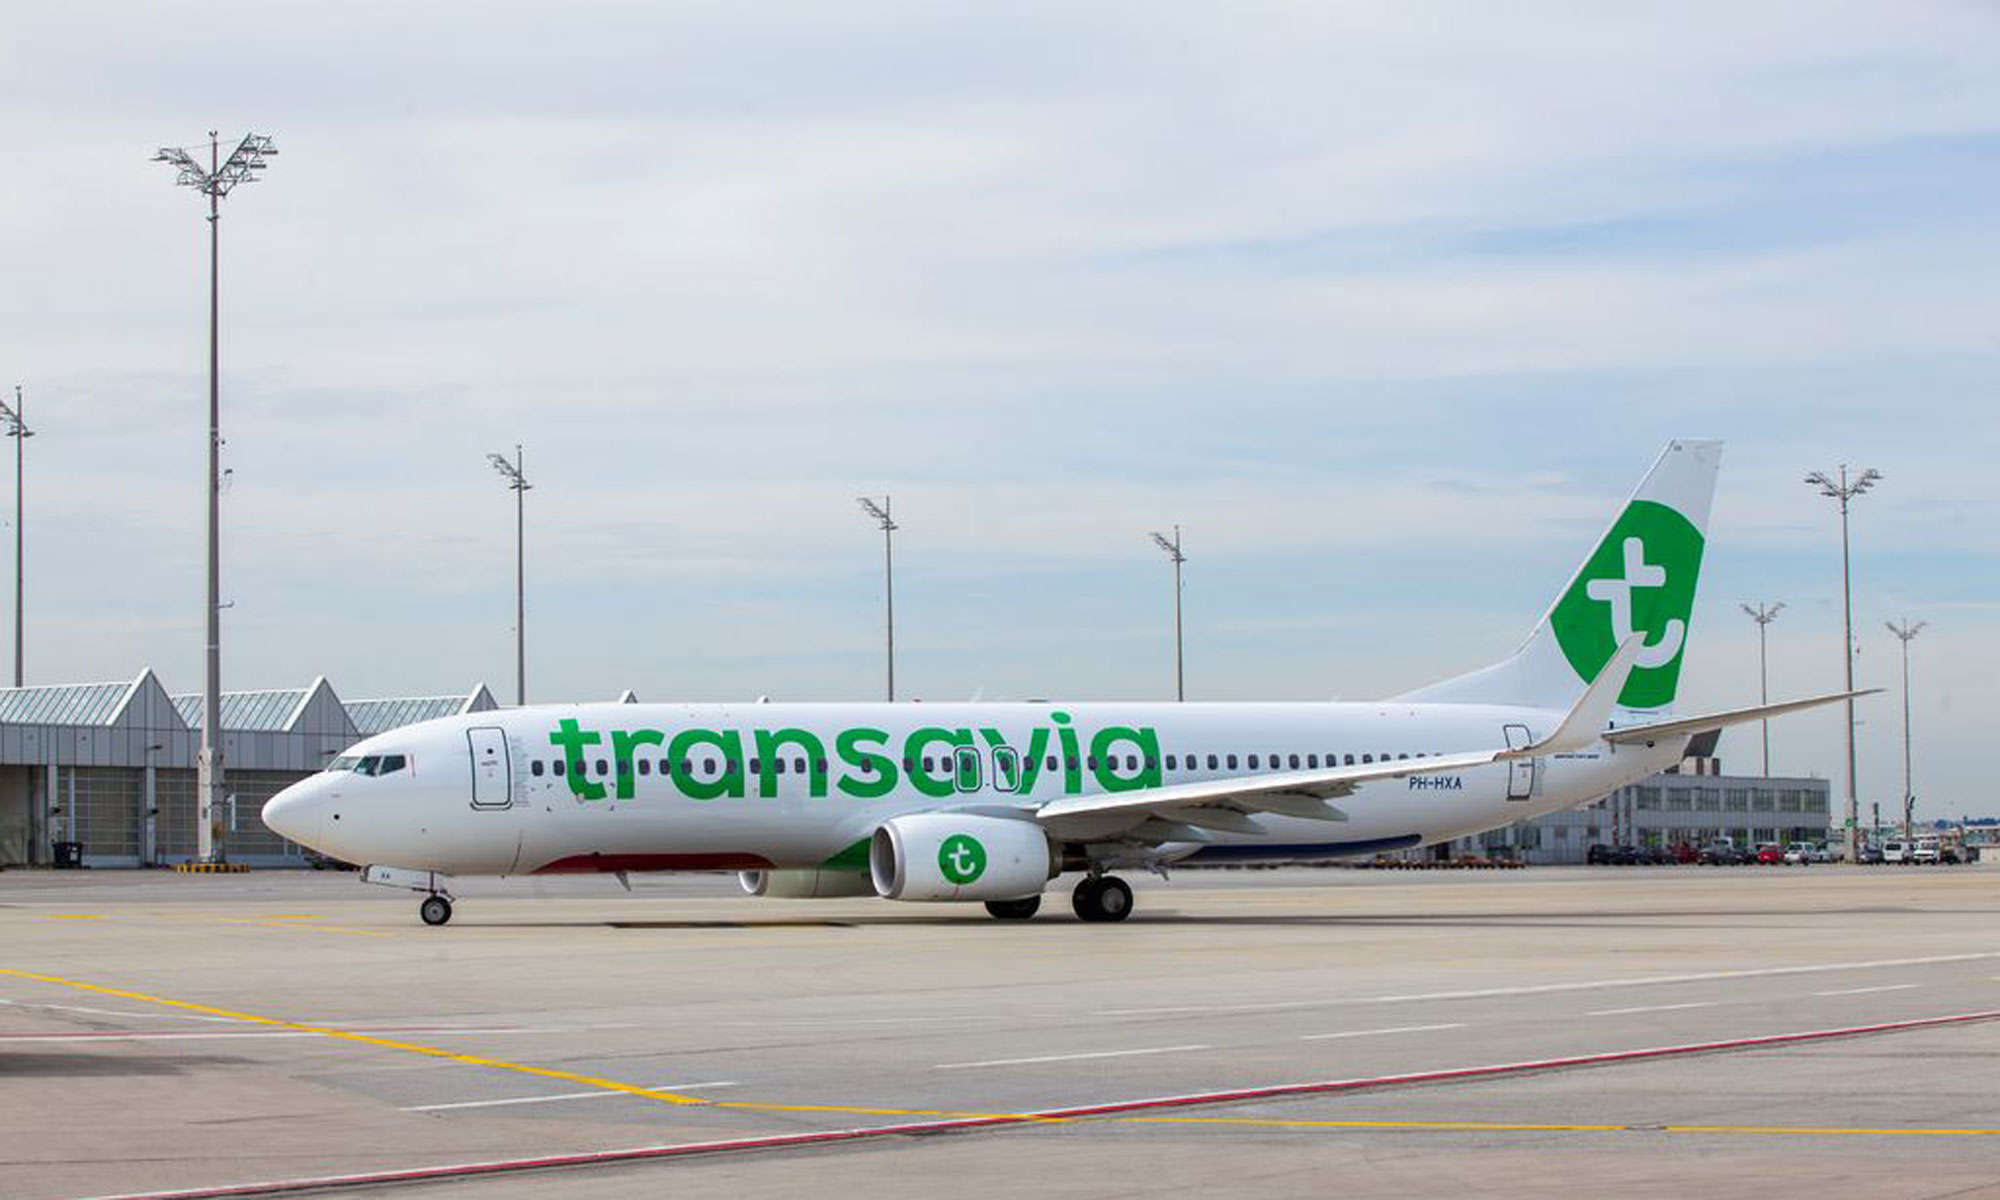 Transavia-Flug von Eindhoven landet nach Verdacht auf Brand im Frachtraum notlandend auf dem Flughafen von Gran Canaria